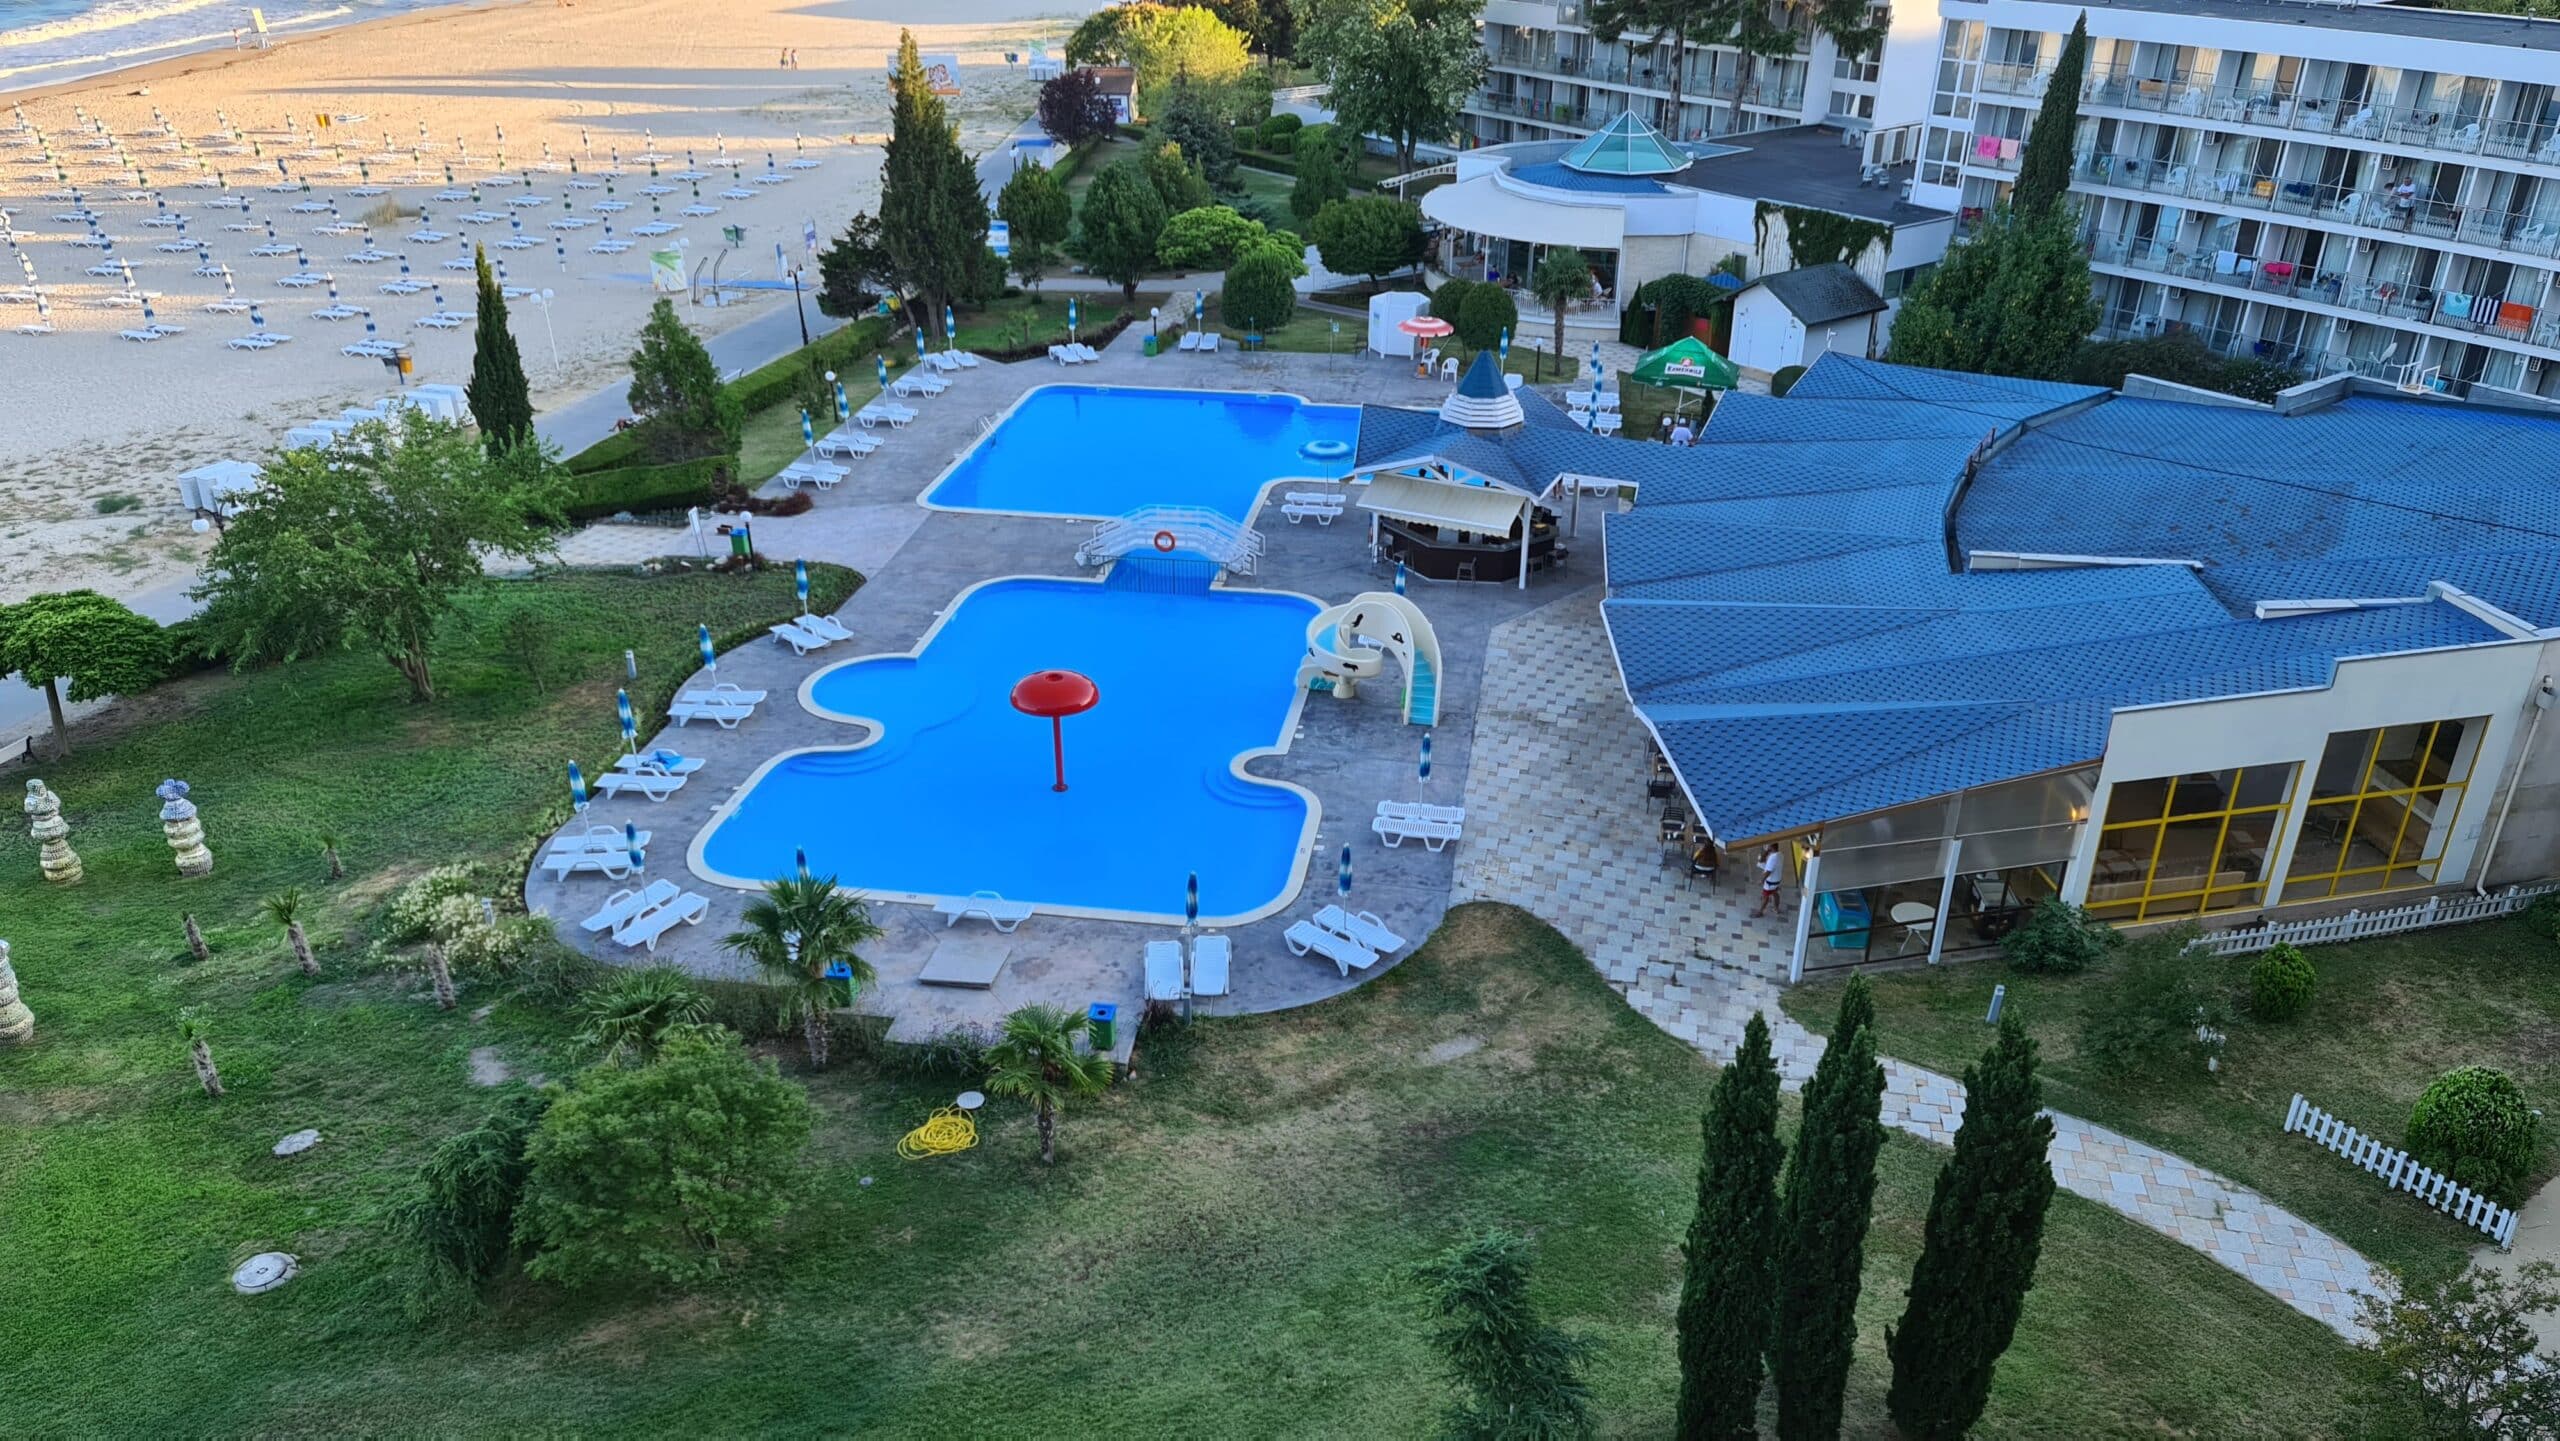 Impresii despre Hotel Kaliakra Albena 4* după o vacanță cu un copil mic. Review detaliat | Demamici.ro